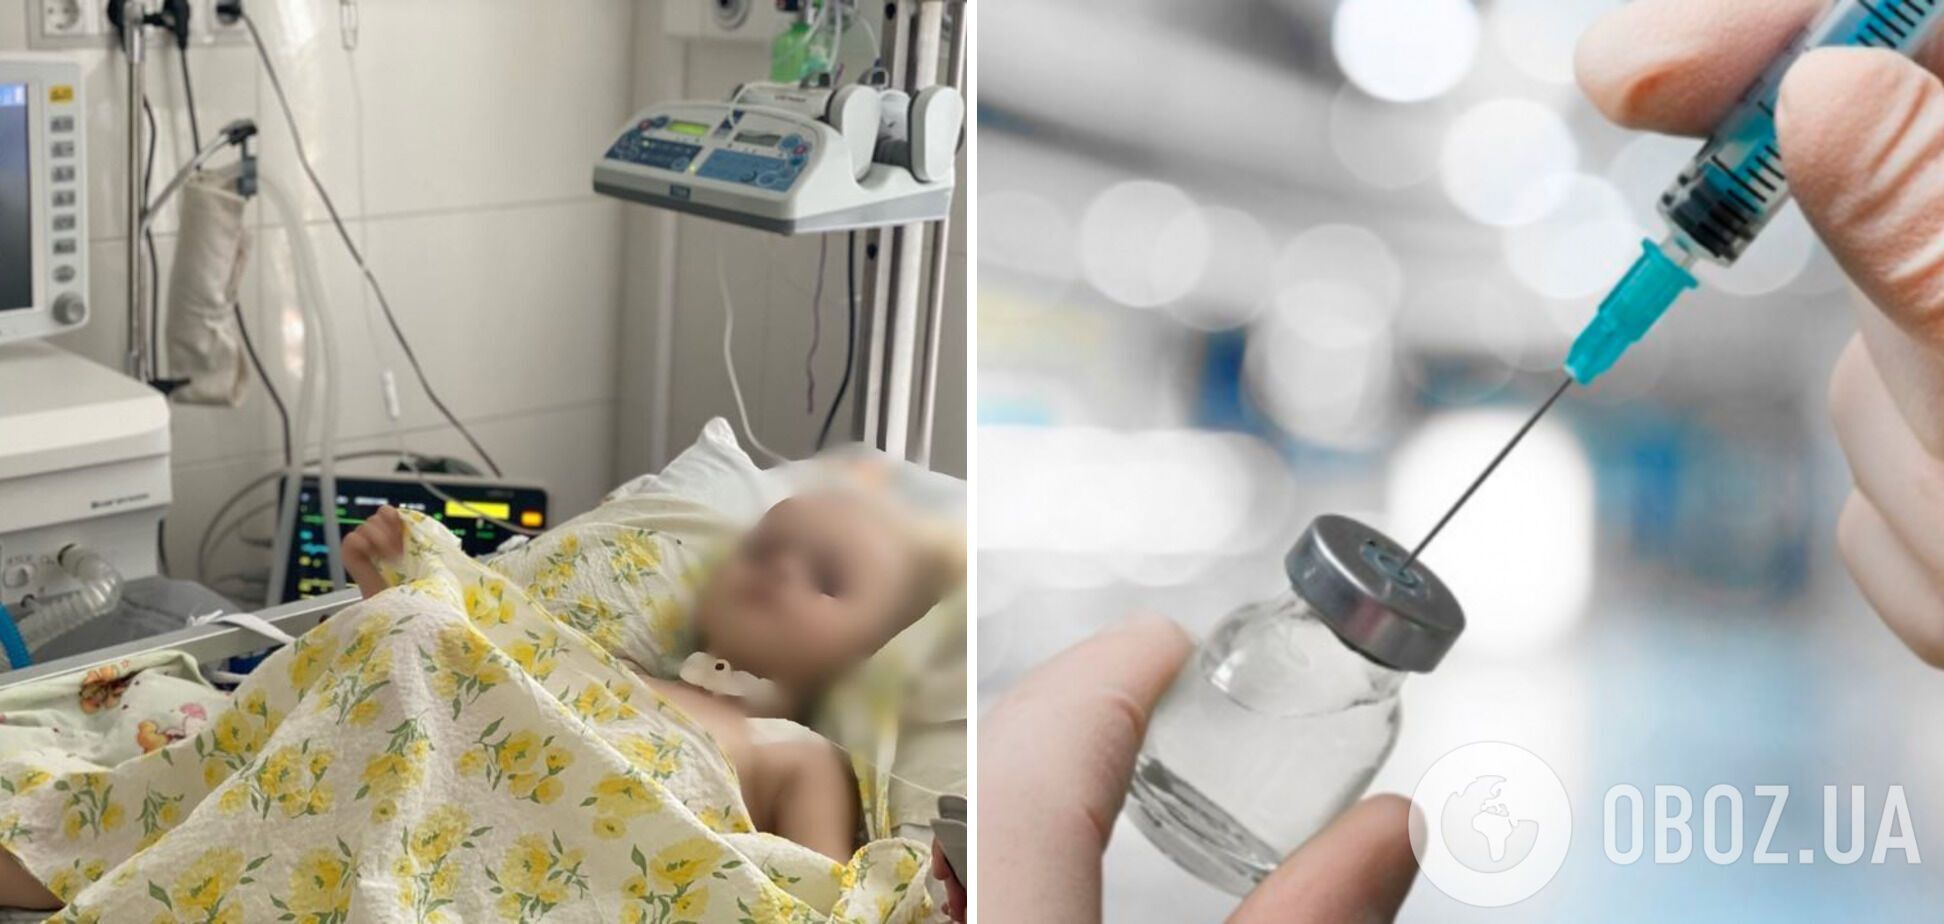 Родители проигнорировали прививку: в Ивано-Франковске 3-летнего ребенка вводили в кому, чтобы спасти от столбняка